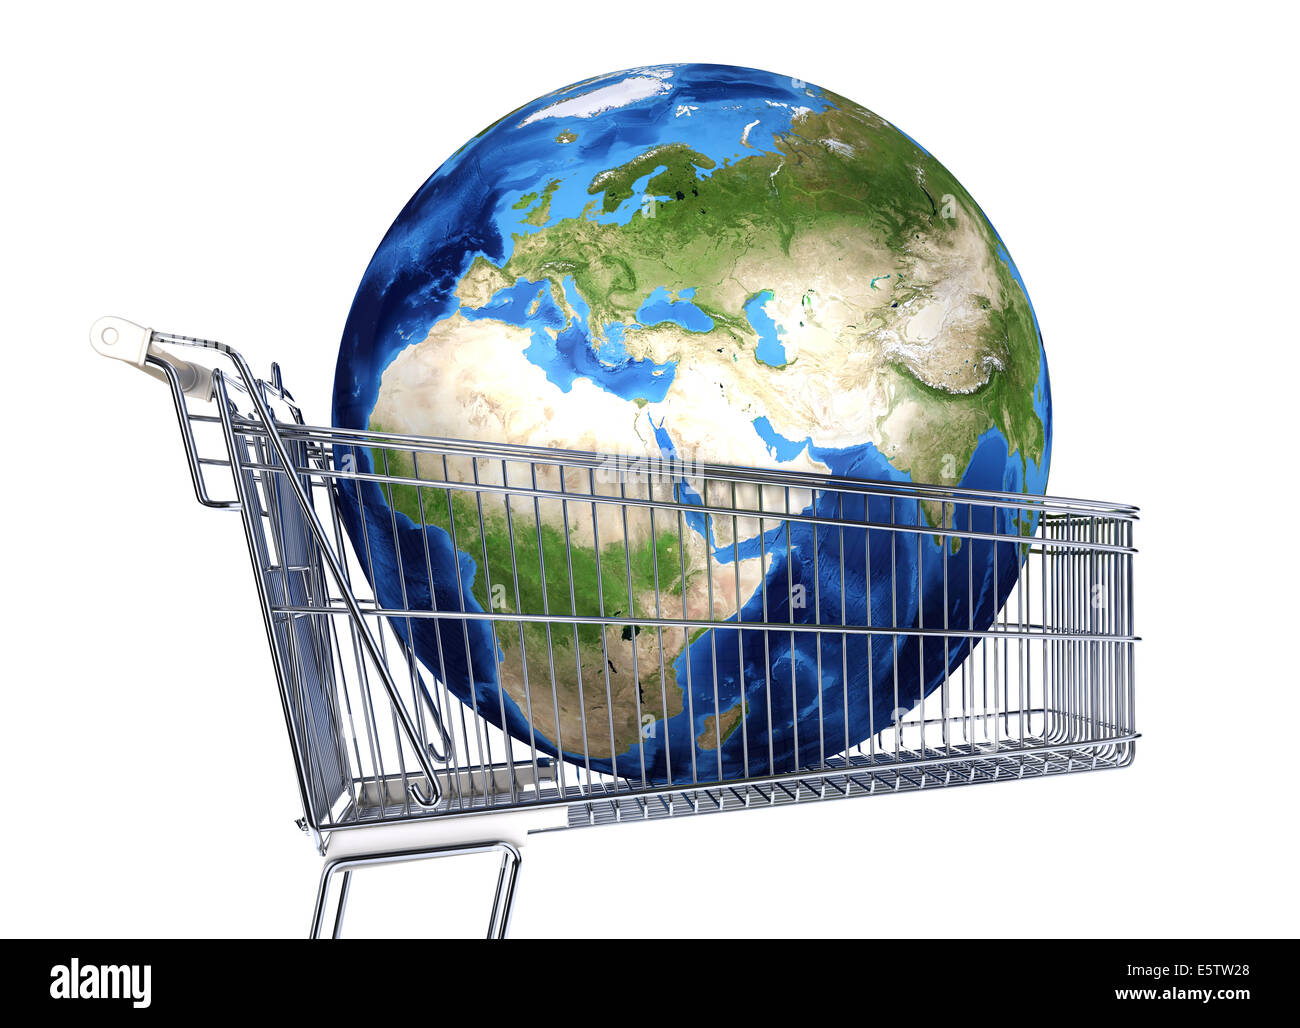 Il Pianeta Terra nel carrello del supermercato. Africa, Europa e Asia. Su sfondo bianco. percorso di clipping incluso. Foto Stock